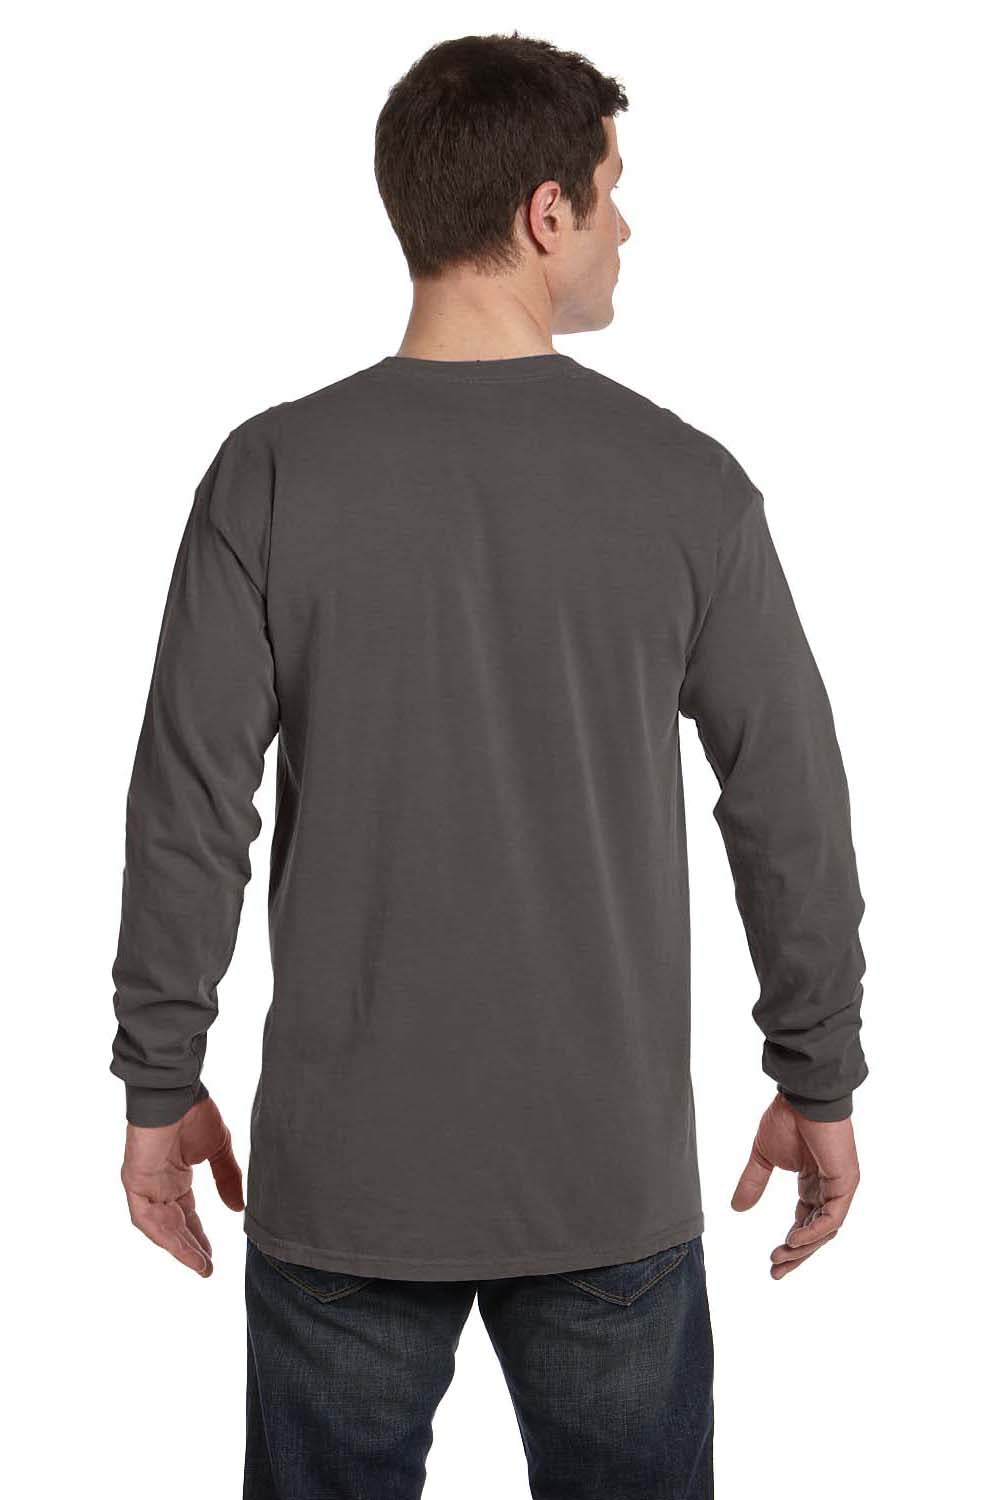 Comfort Colors C6014 Mens Long Sleeve Crewneck T-Shirt Pepper Grey Back